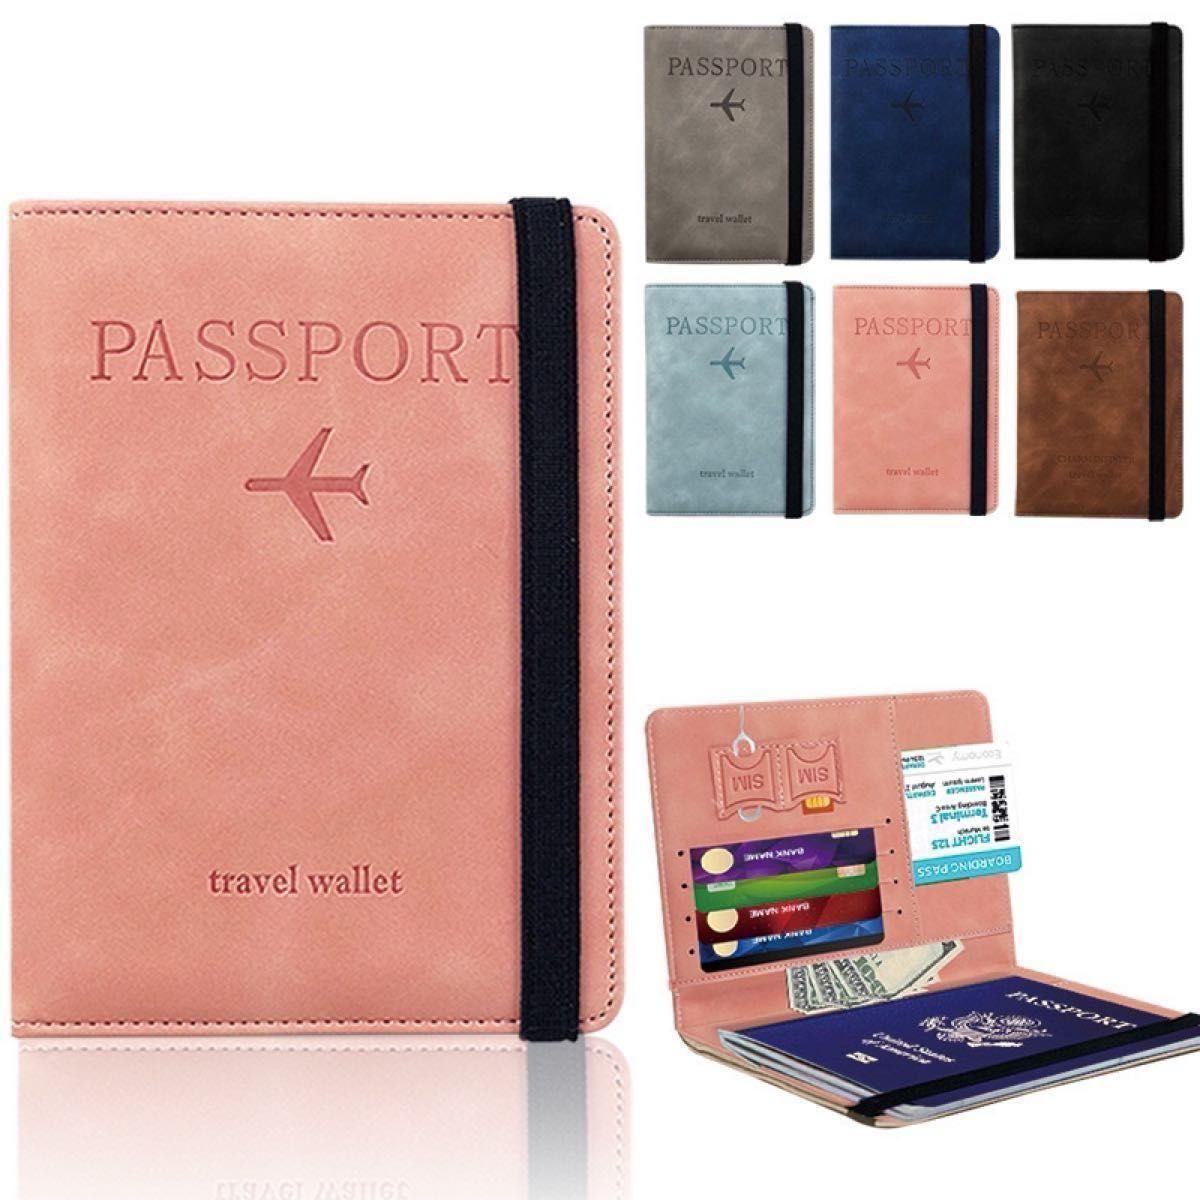 (ピンク) パスポートカバー スキミング防止 旅行用品 軽量 高級PUレザー ラベルウォレット 多機能収納ポケット